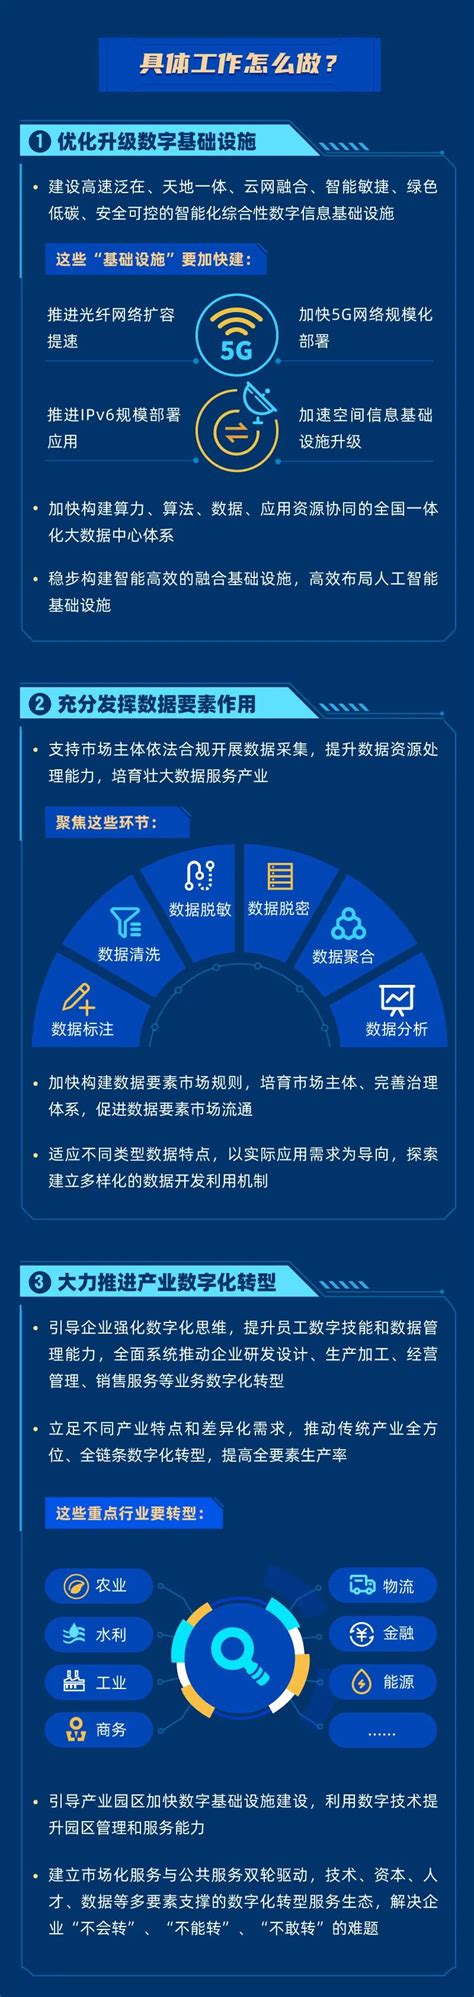 十四五数字经济发展规划宣传挂画图片下载_红动中国